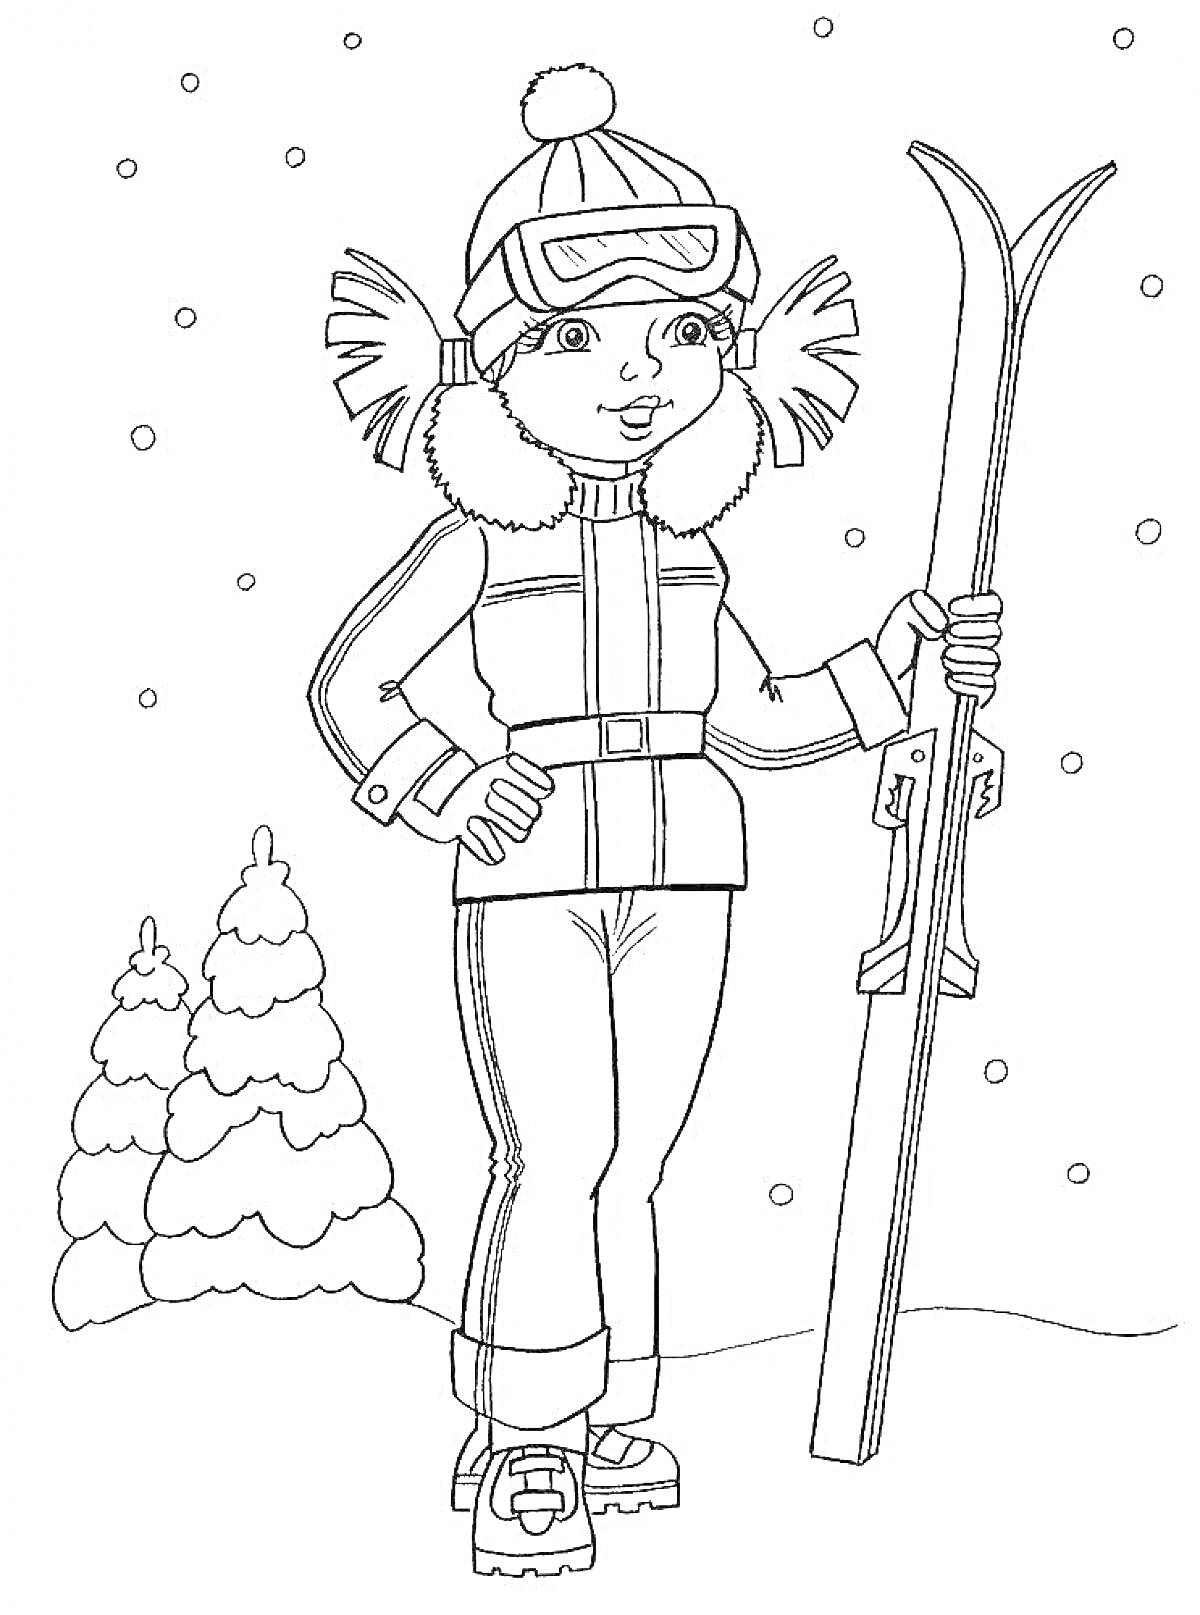 Раскраска Мальчик на лыжах в зимней одежде, стоит на снегу у елок